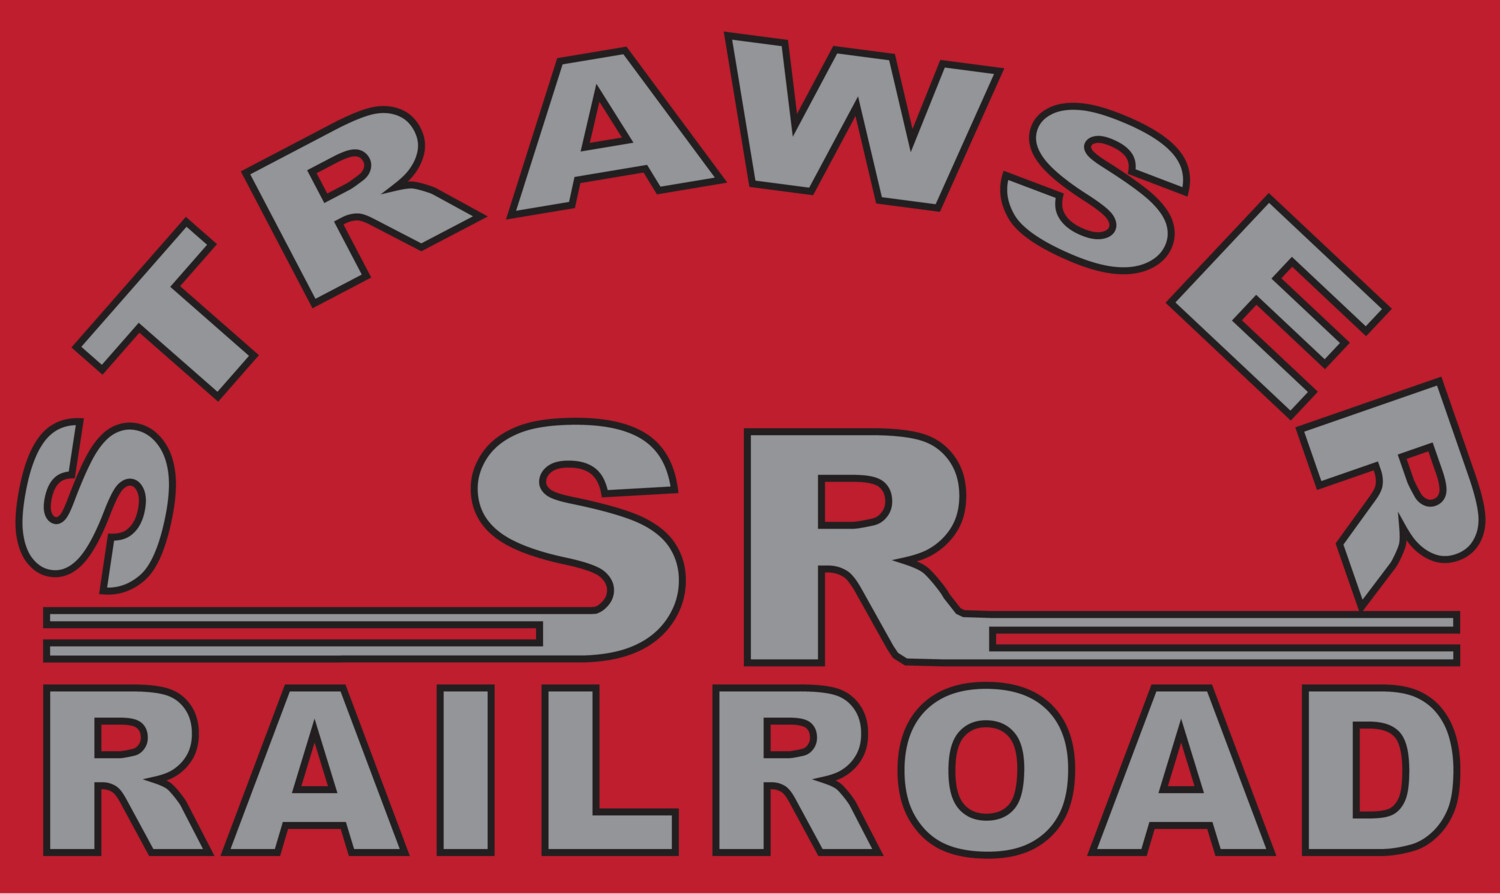 Stawser Raliroad Speeder Door Logo Vinyl